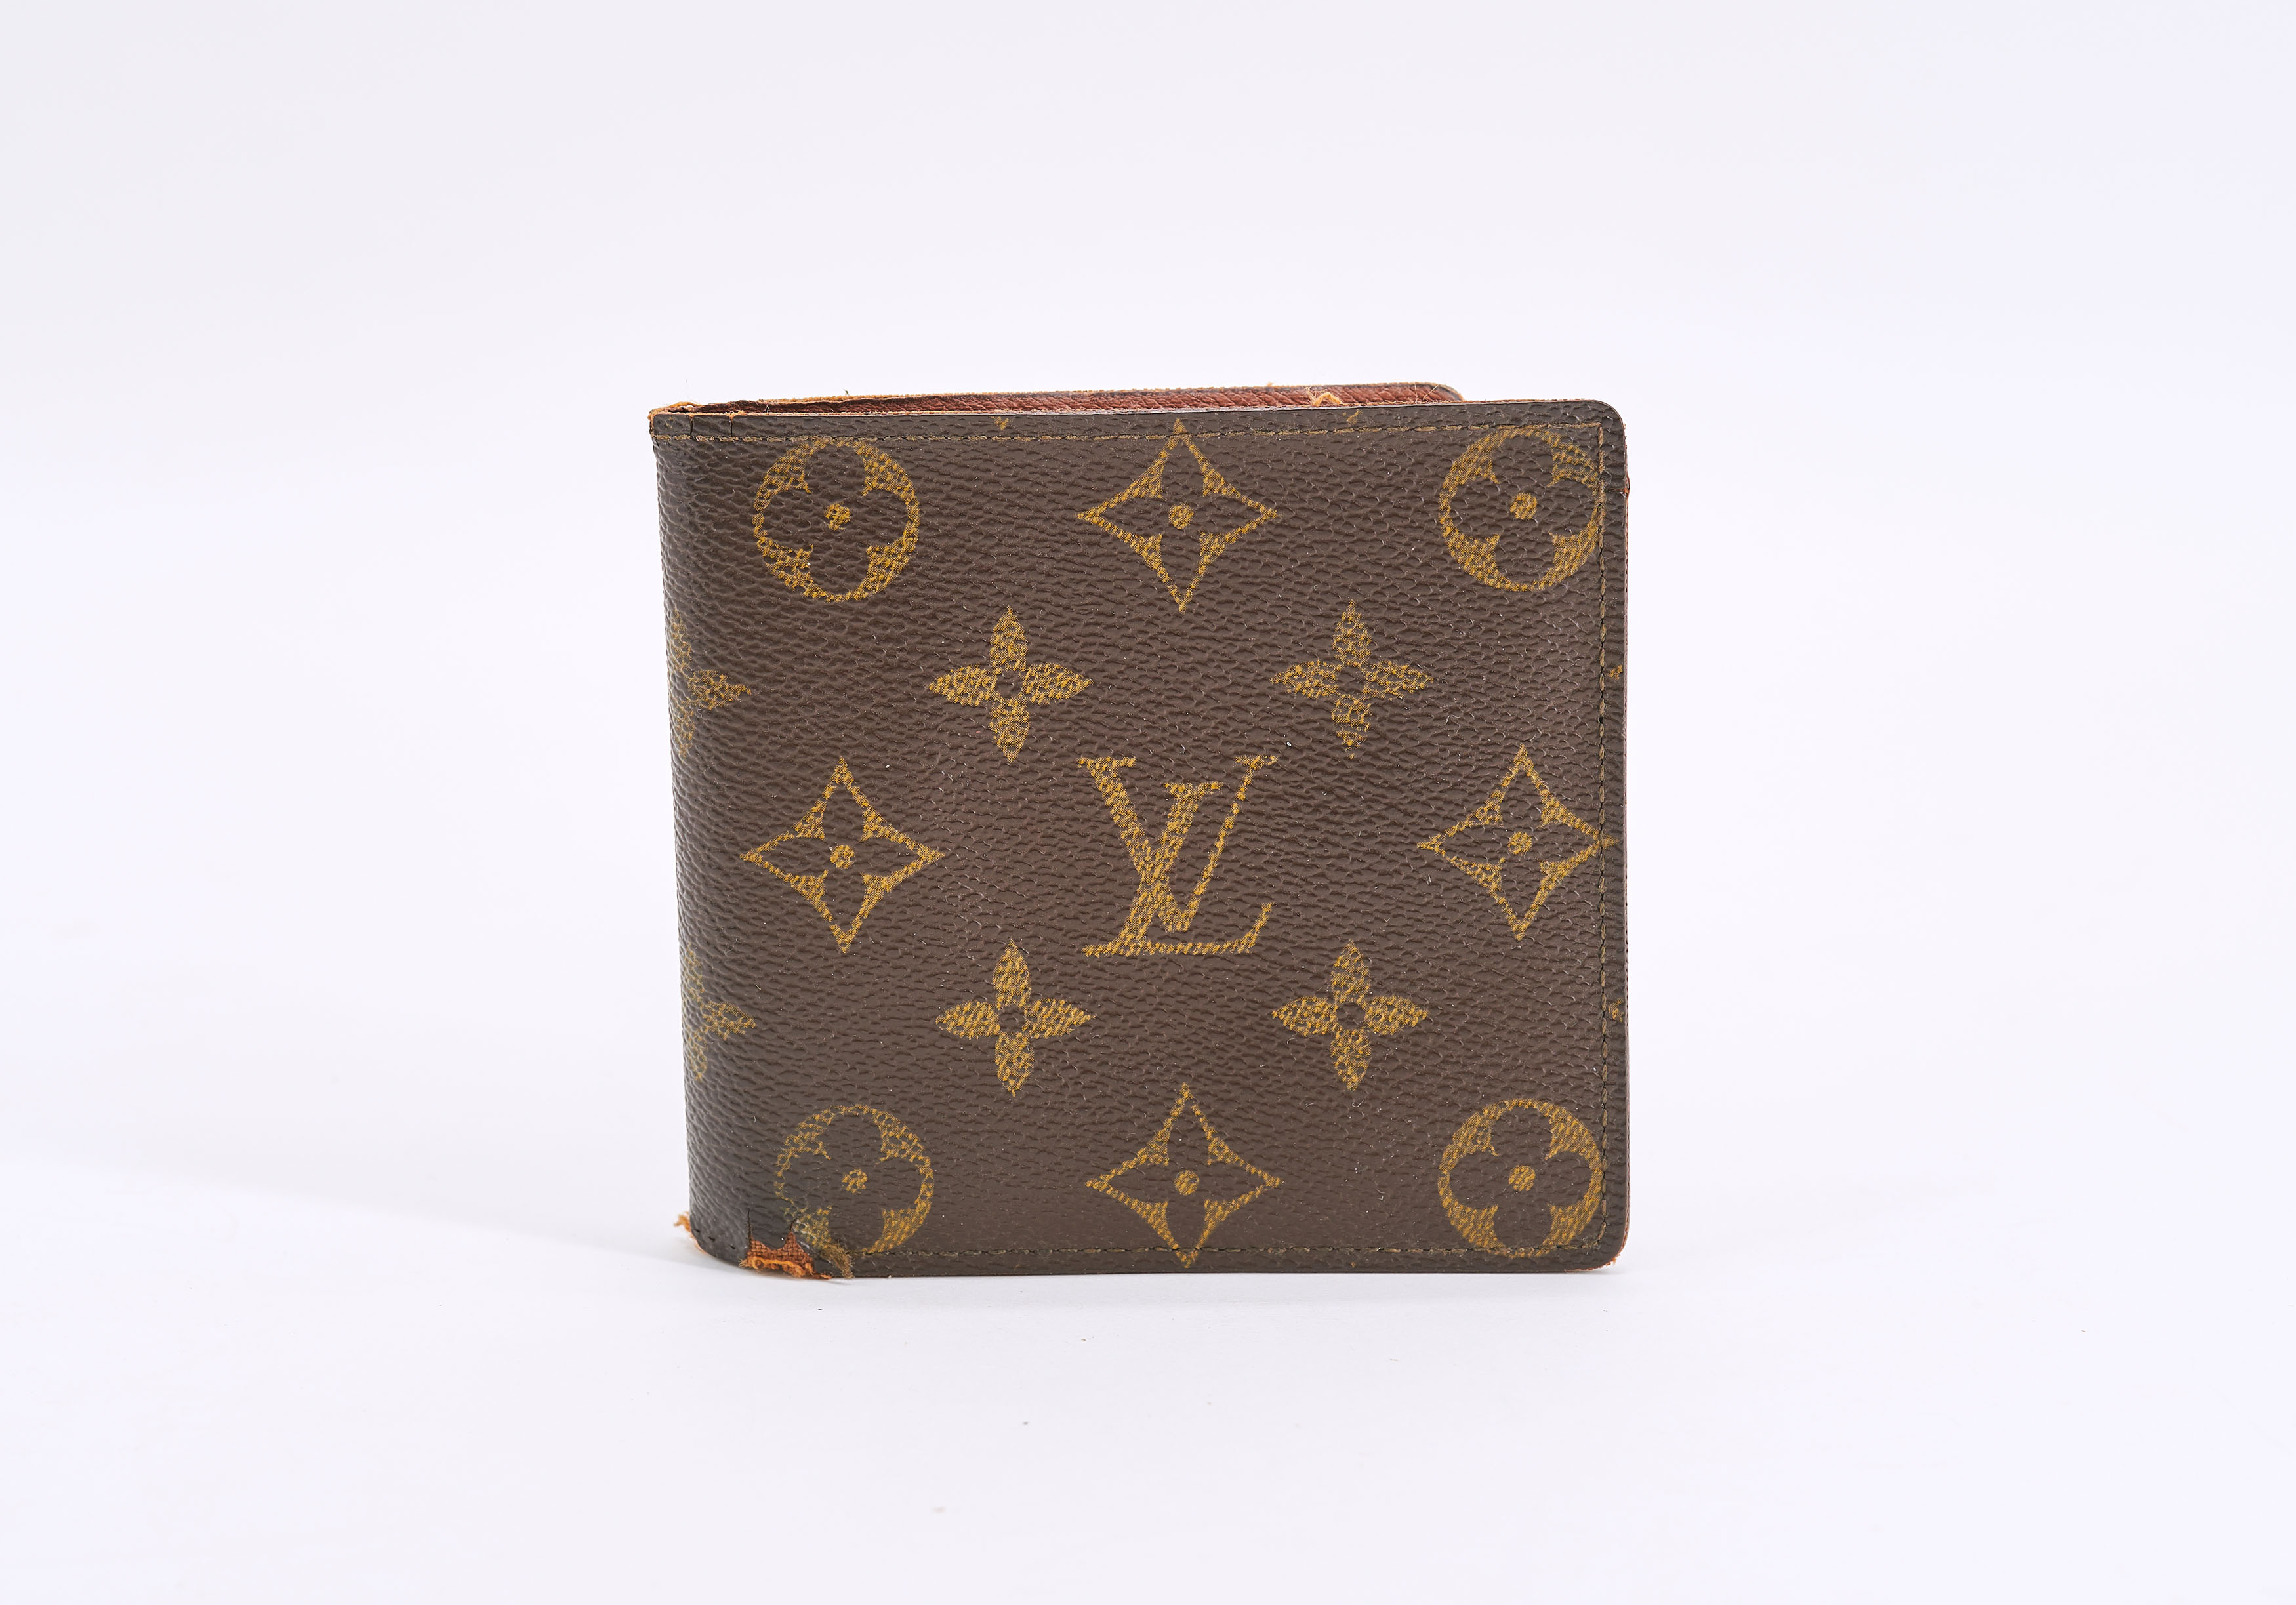 Louis Vuitton – Kaufen & Verkaufen